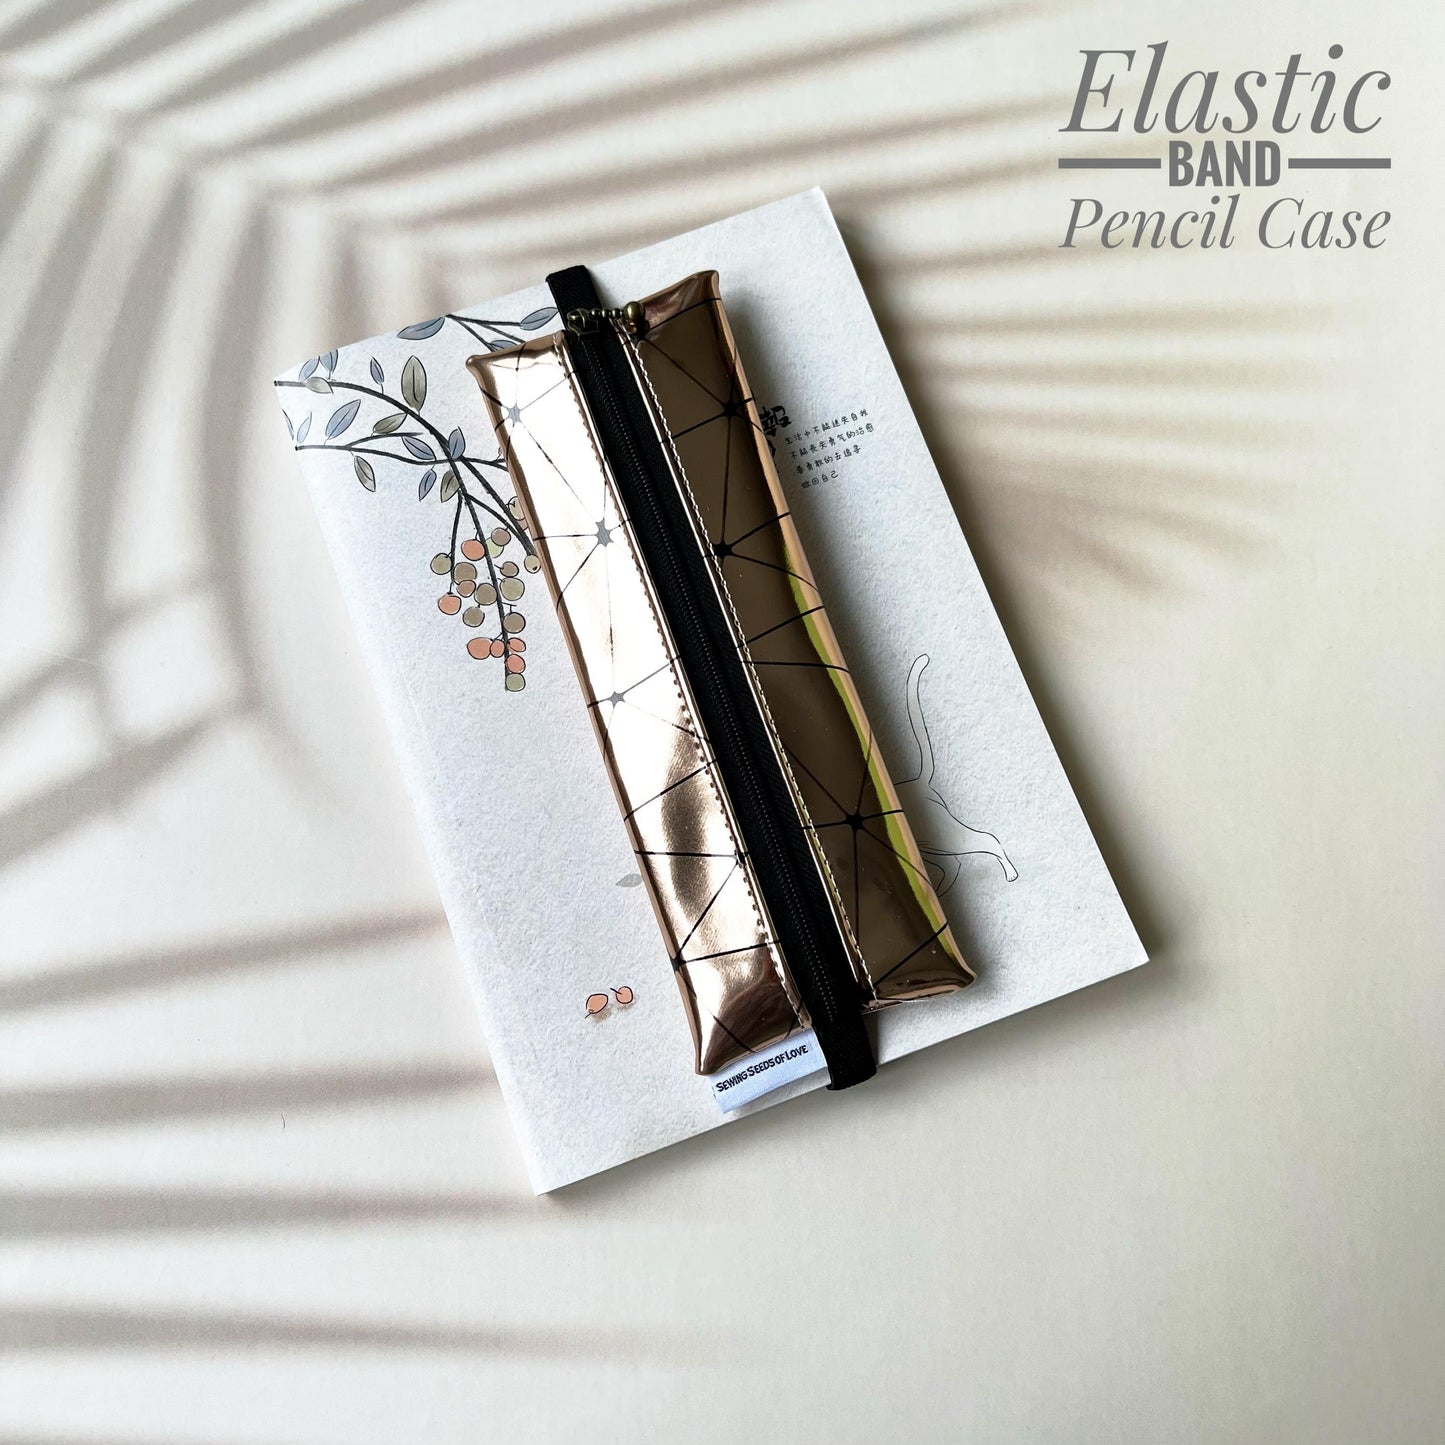 Elastic Band Pencil Case - EBPC28